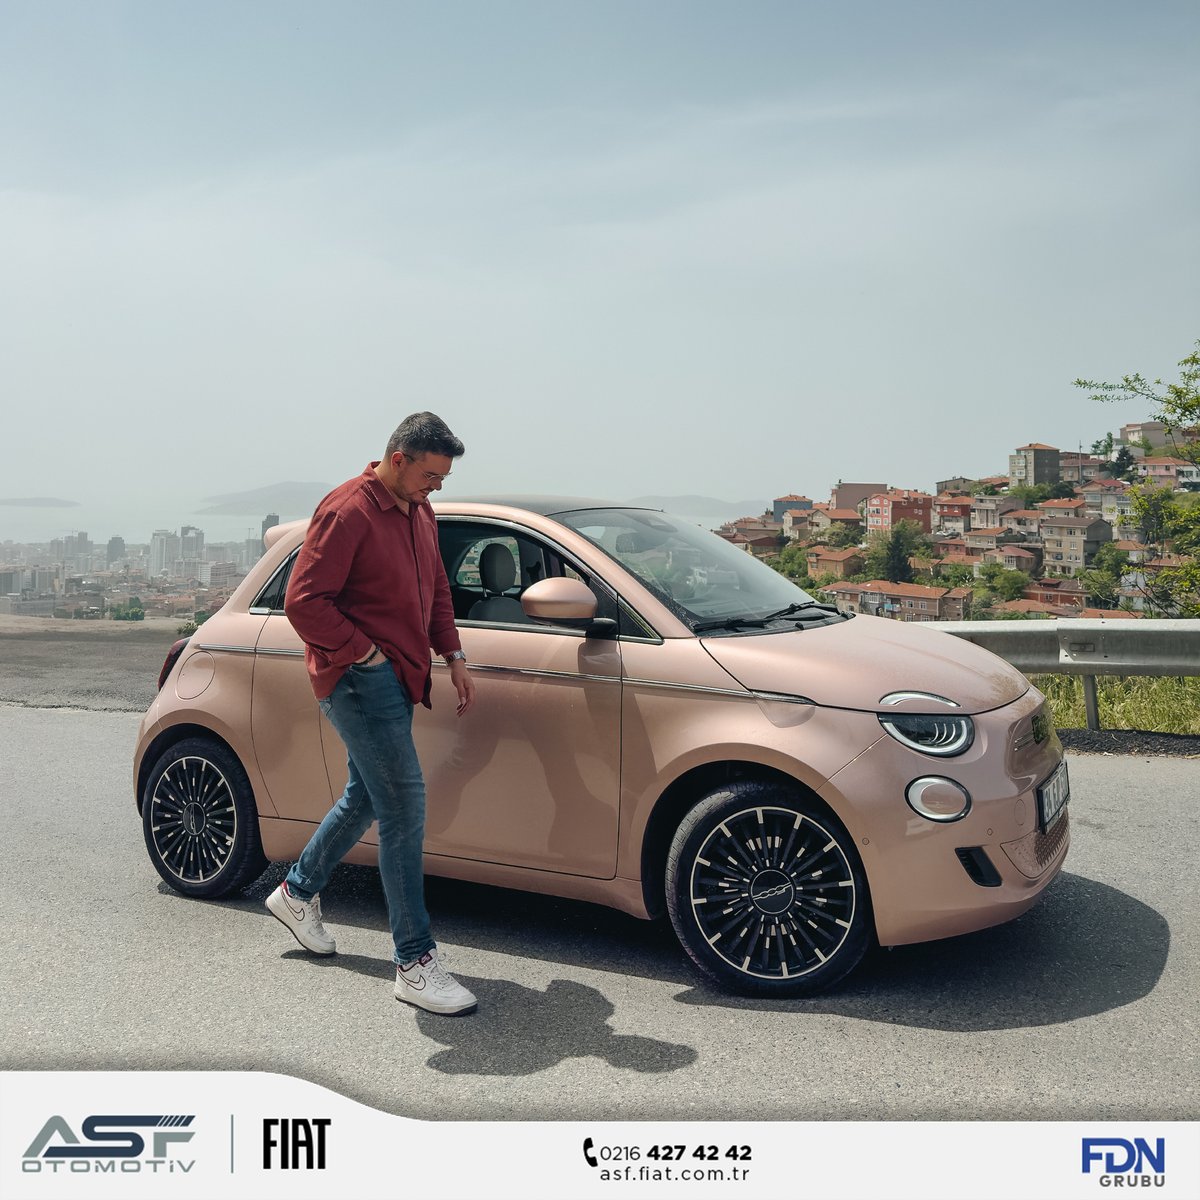 Hızlı batarya şarjı ile yeni Fiat 500e'nin enerjisi hafta sonu planlarınızın tümüne yeter!🔌🔋
Yeni bir elektrikli sürüş deneyimine hazır mısınız? ⚡

#ASFFiat #ASFOtomotiv #Fiat #Fiat500e